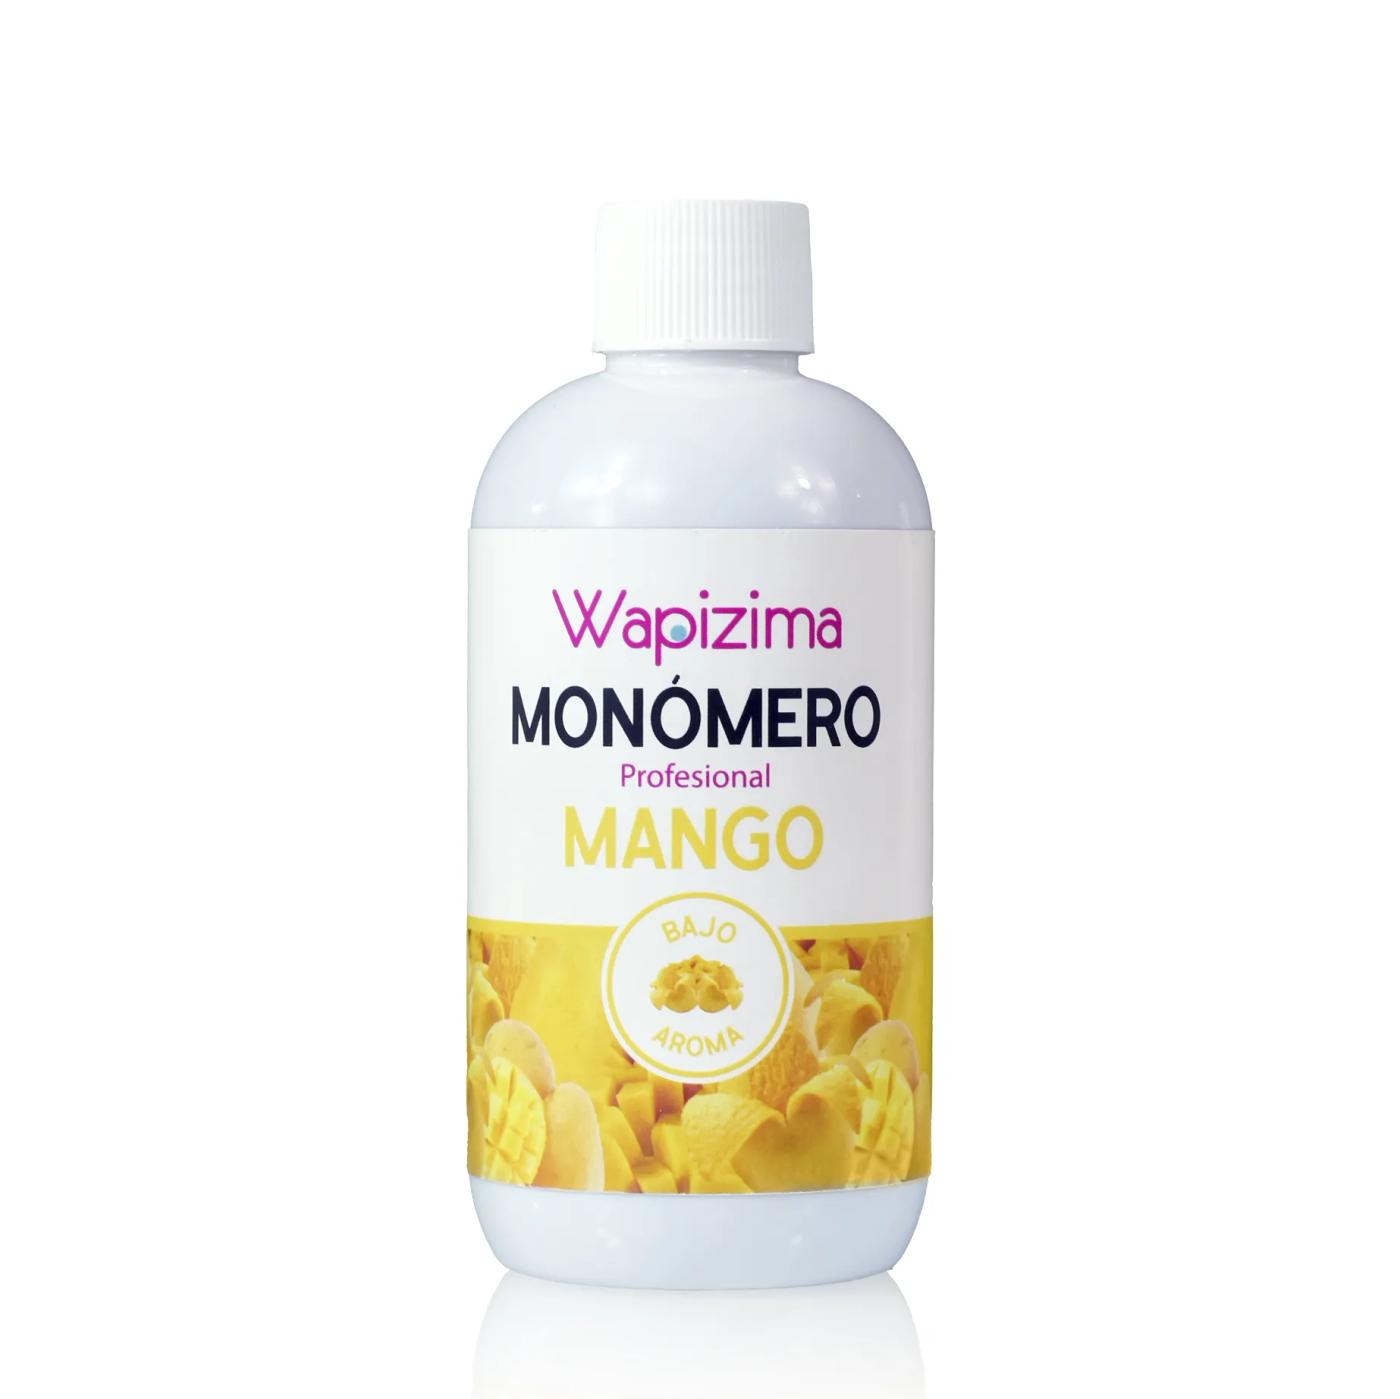 W.Monomero Mango 8 OZ